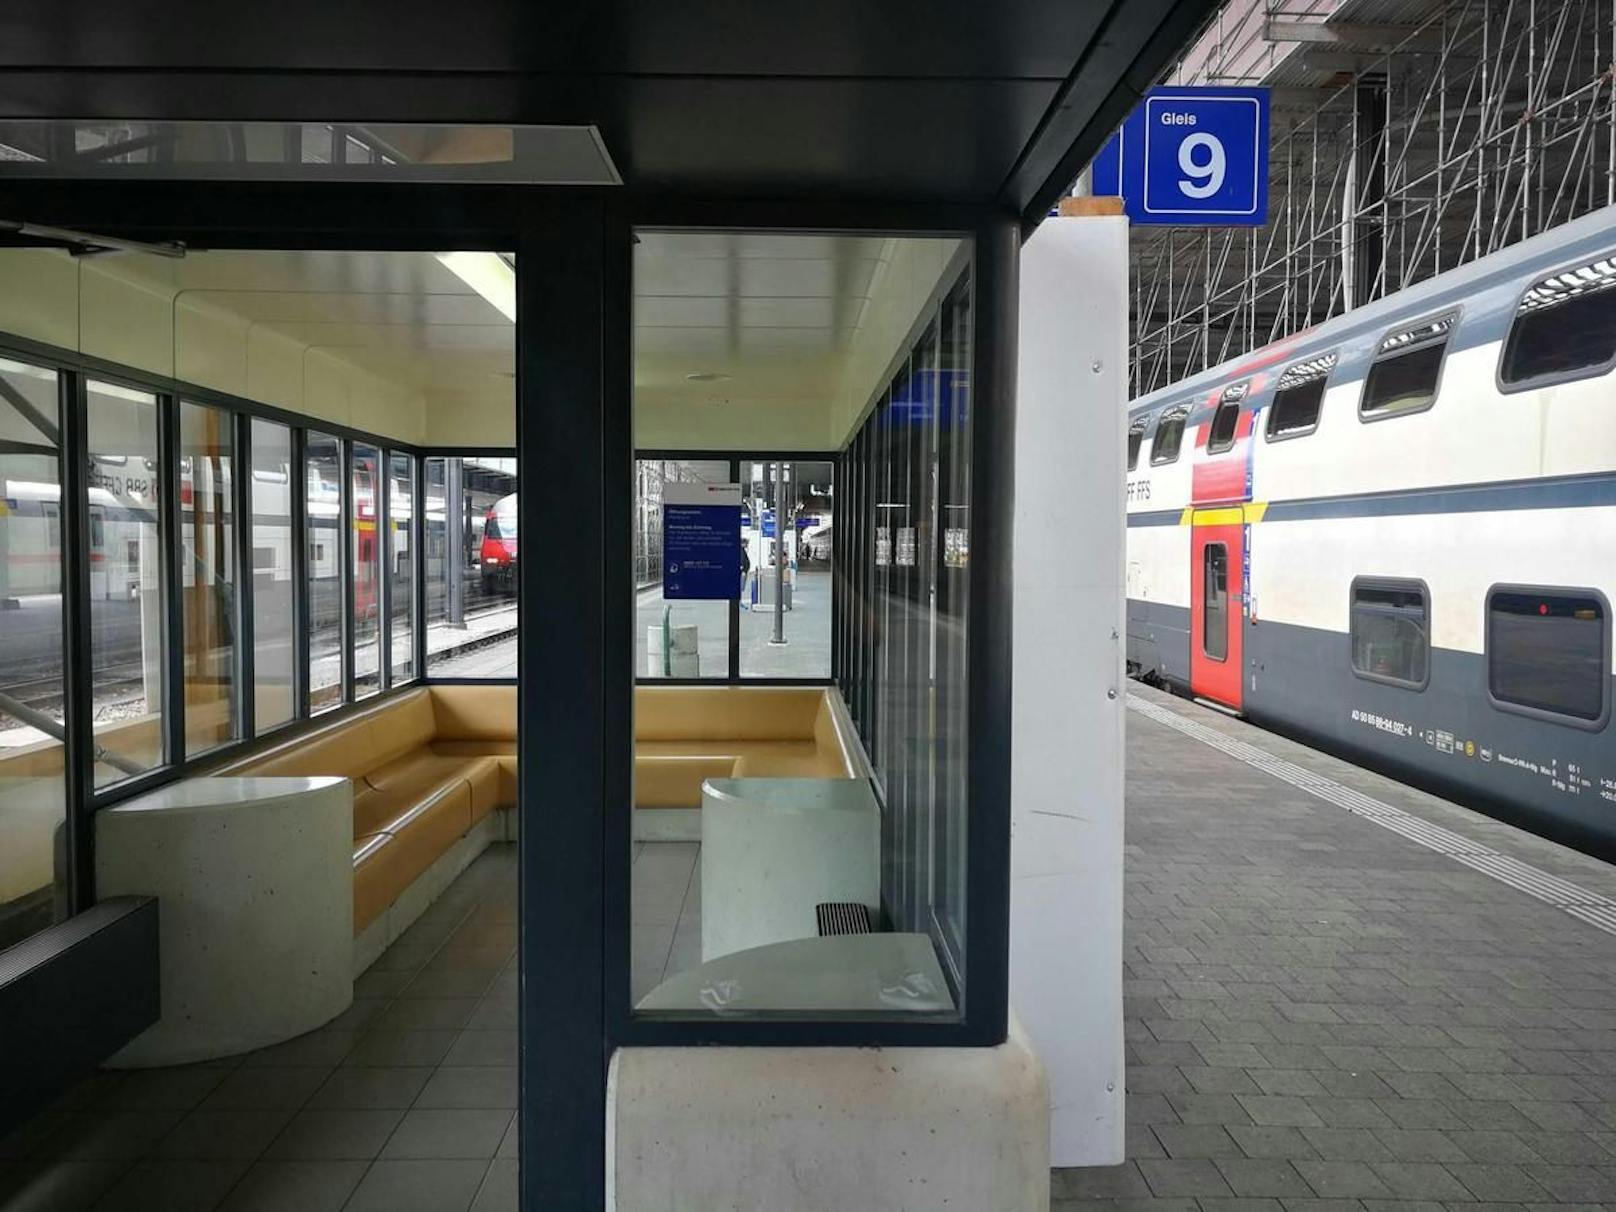 Hier geschah es: In einem Wartehäuschen auf dem Perron von Gleis 9 kam es am 9. November 2019 zum Sexualdelikt. Der mutmaßliche Täter bestieg nach der Tat einen Zug nach Bern.